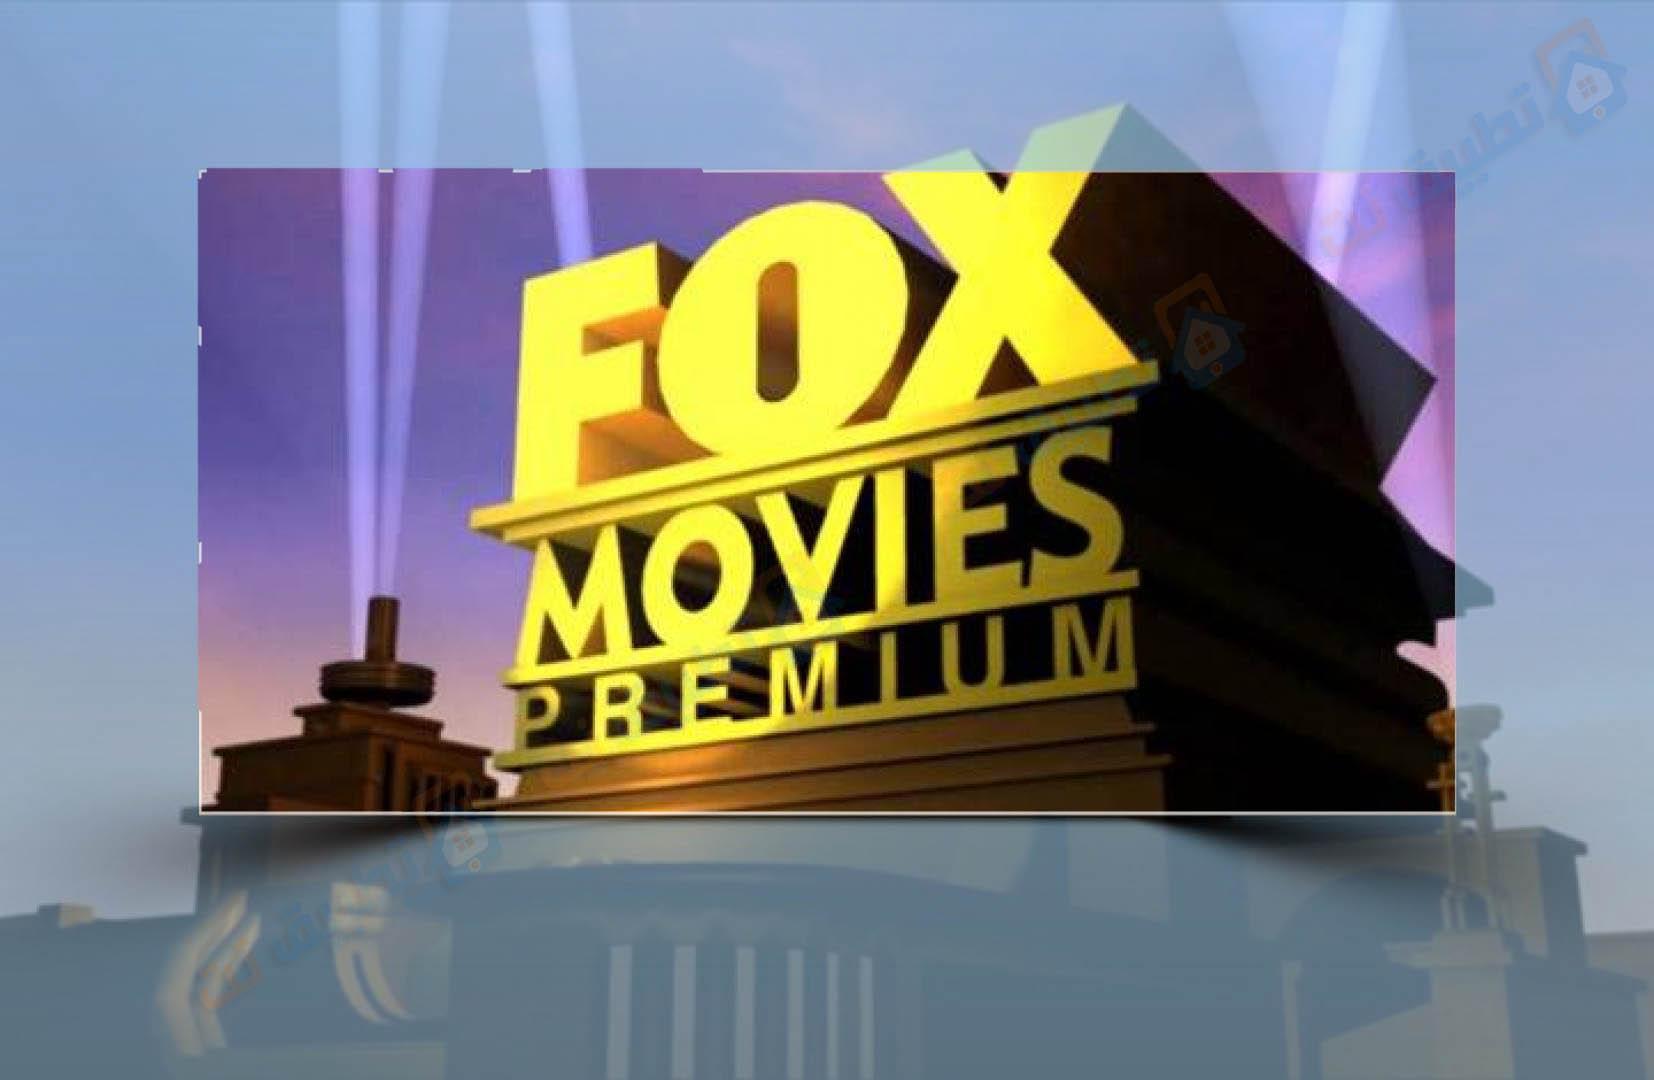 تردد قناة فوكس موفيز - Fox movies